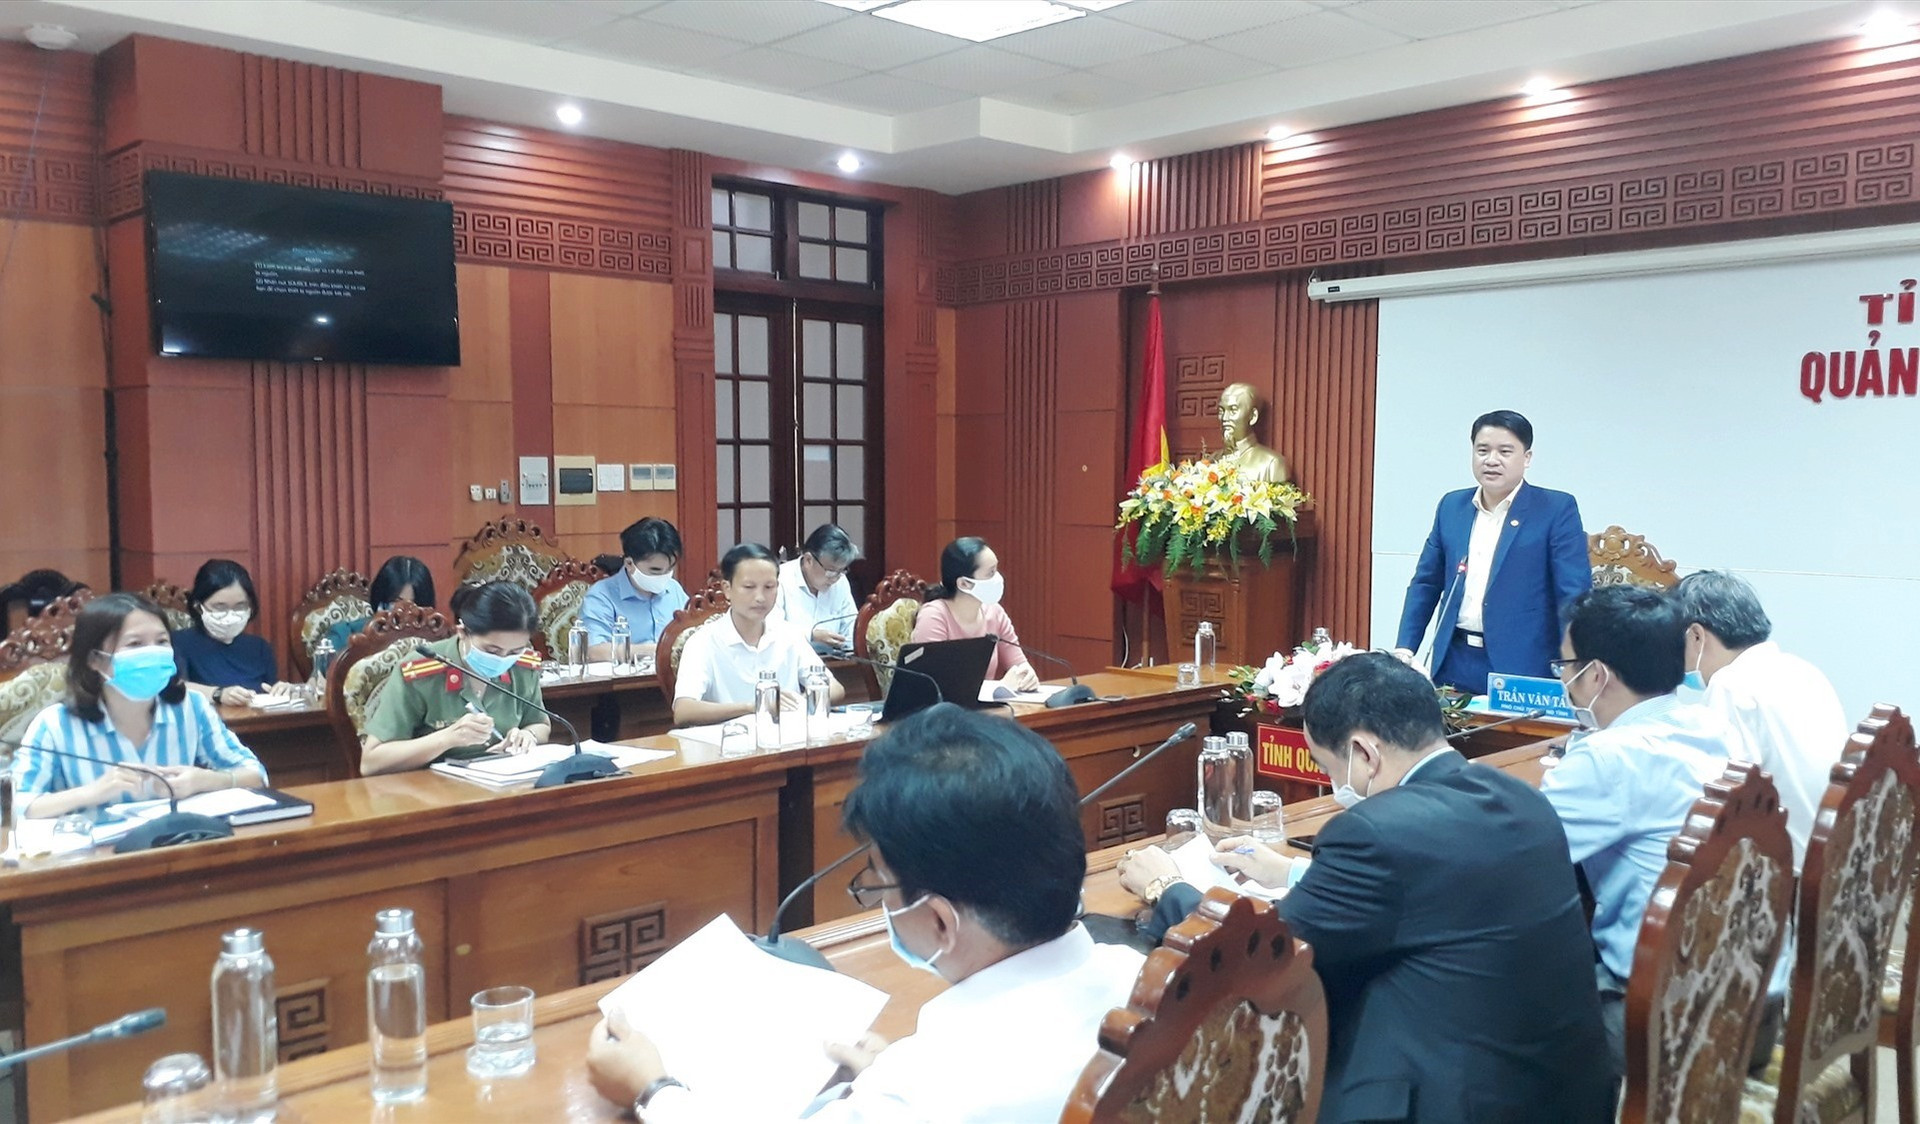 Phó Chủ tịch UBNd tỉnh Trần Văn Tân yêu cầu Công ty TNHH tư vấn giáo dục Teach For Viet Nam hoàn thiện các thủ tục hồ sơ pháp lý. Ảnh: X.P